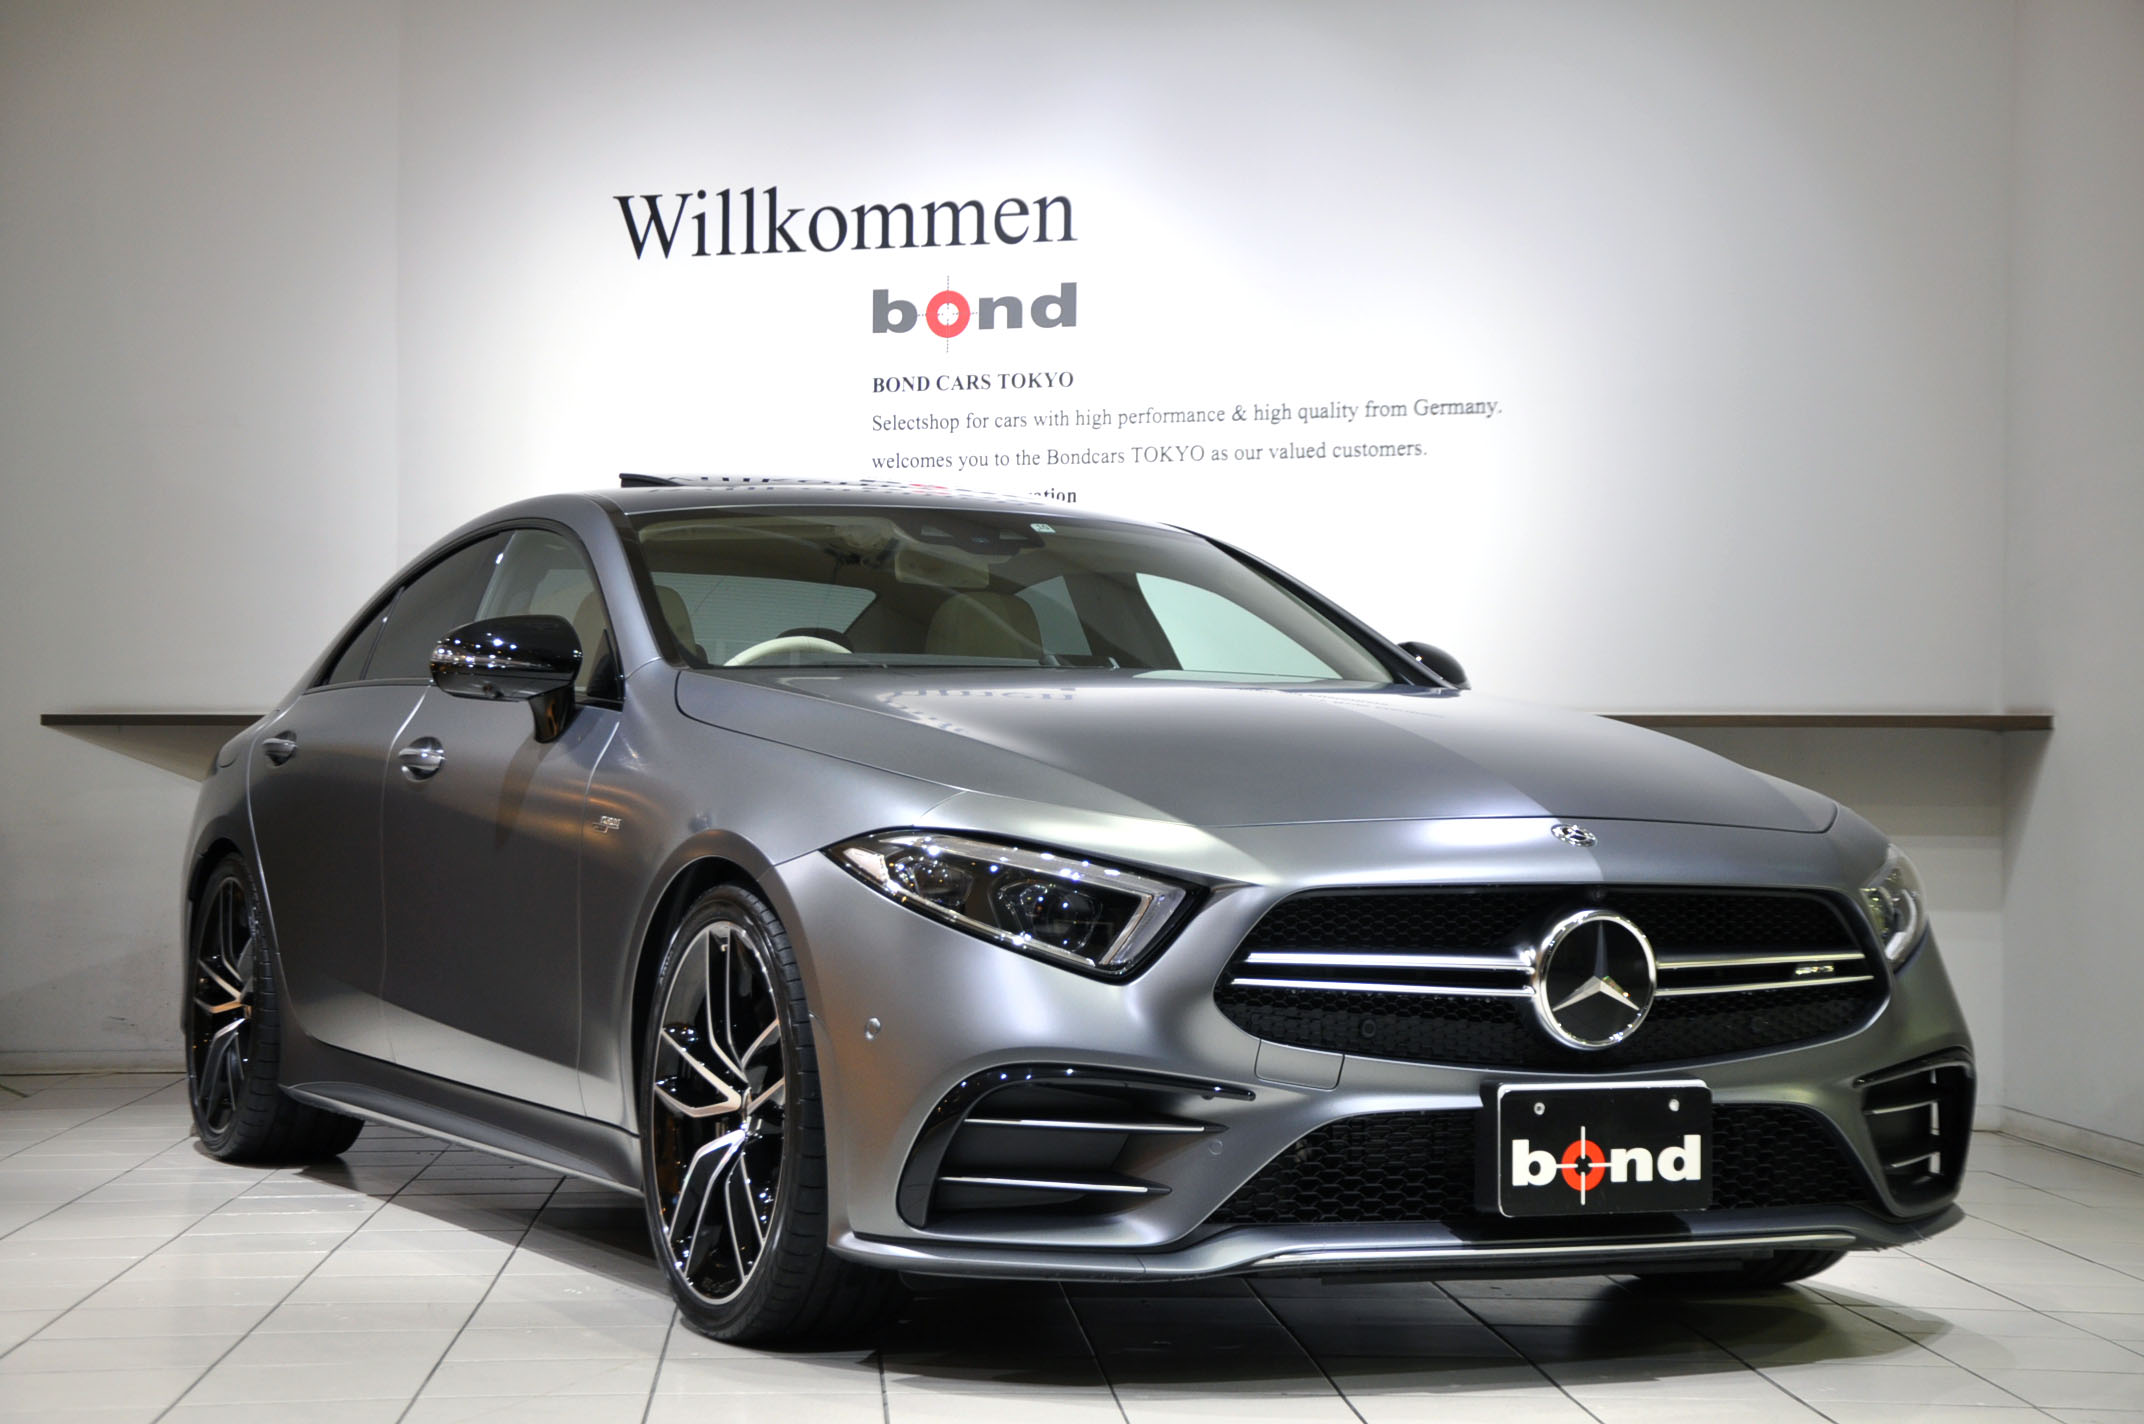 MercedesAMG CLS53 4MATIC bond bond 輸入車 販売 買取 新入庫車両